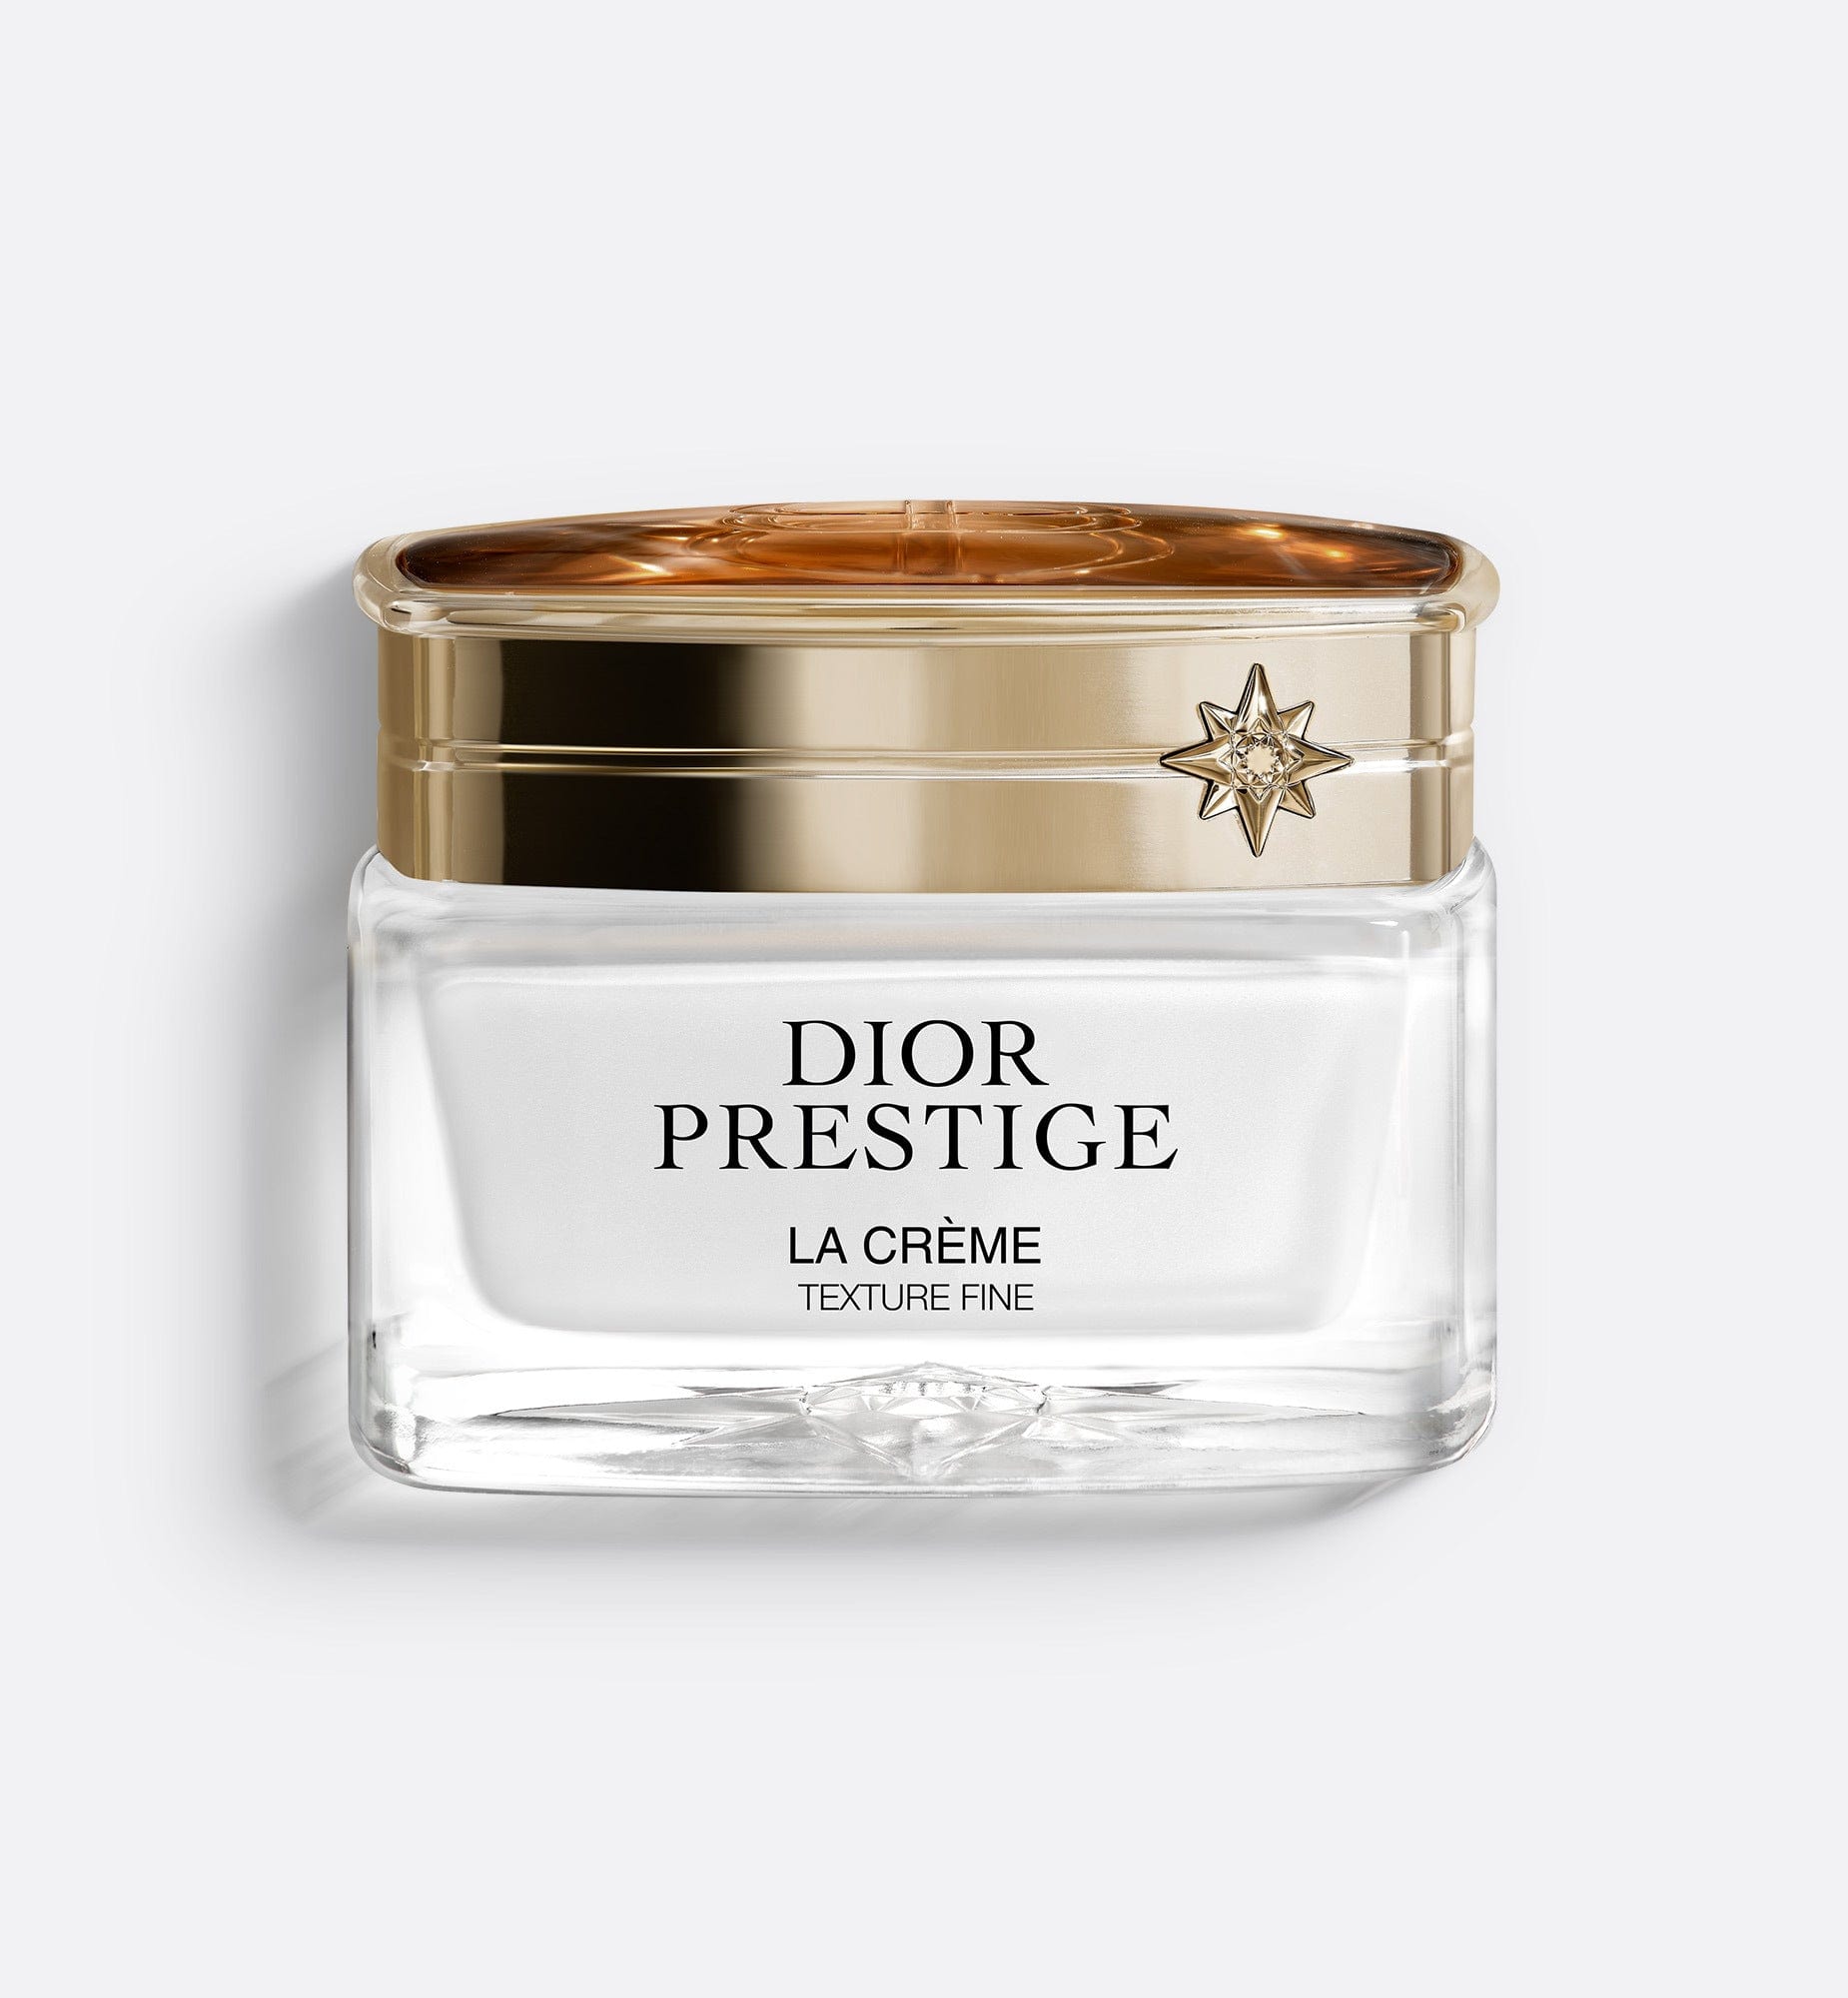 Dior Prestige La Crème Texture Fine | Age-Defying Intensive Repairing Cream - Combination to Oily Skin